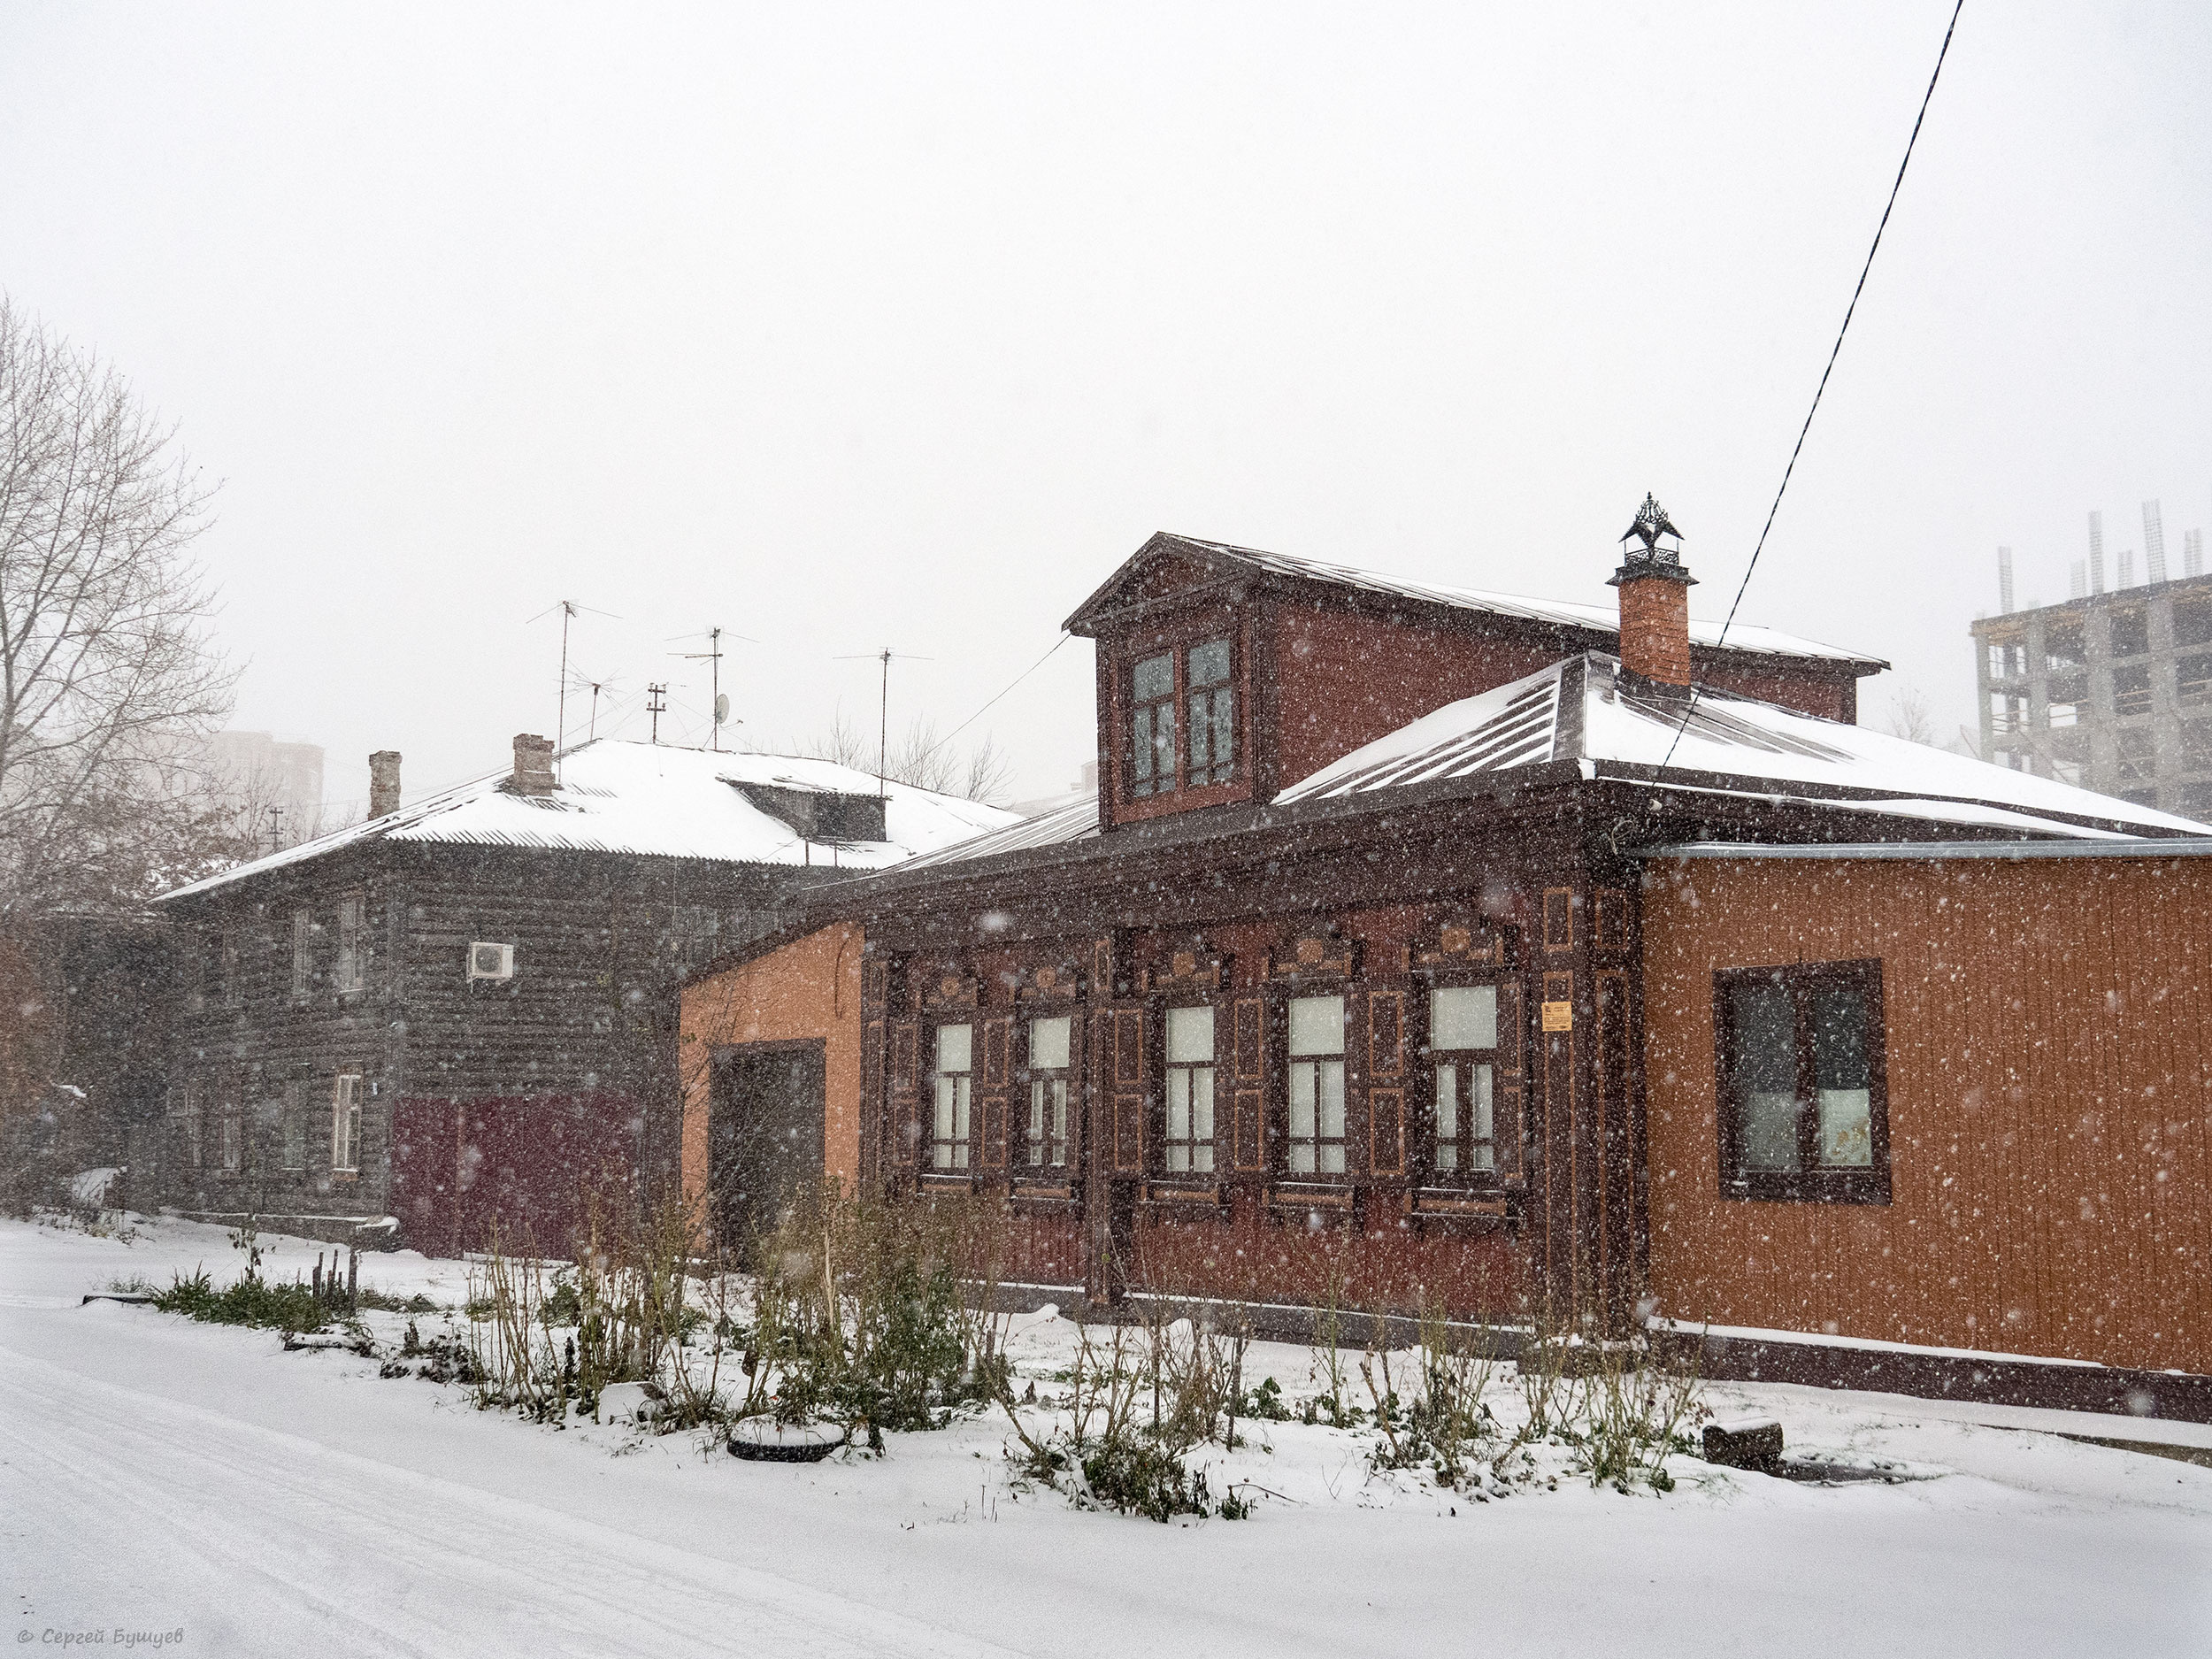 «Снегопад на Пароходской улице» — так назвал кадр автор фото